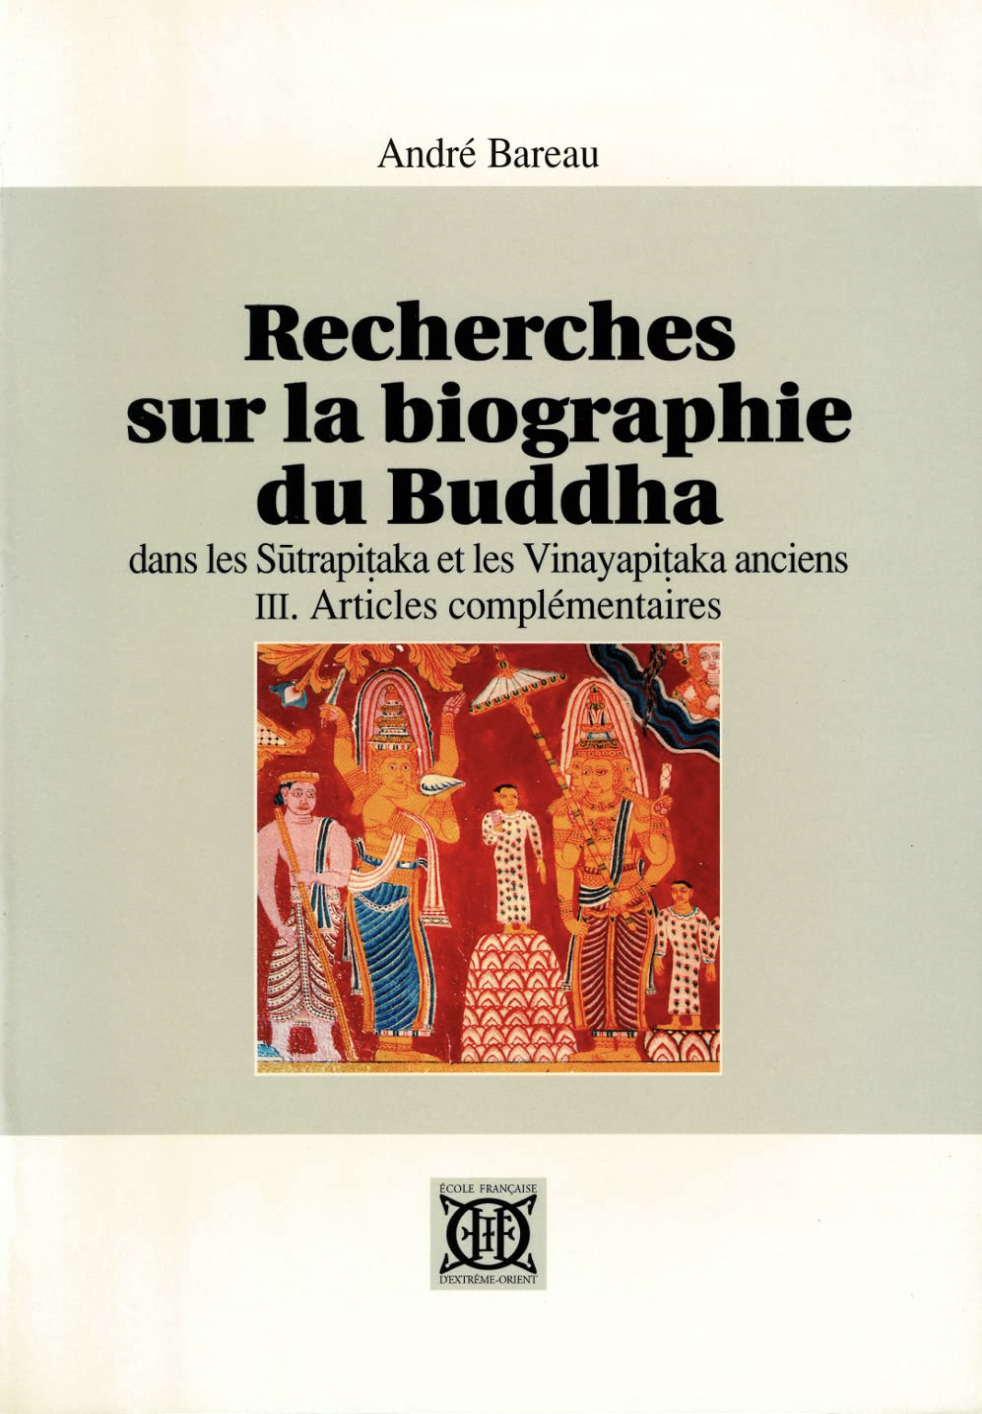 Recherches sur la biographie du Buddha Vol 3.jpg